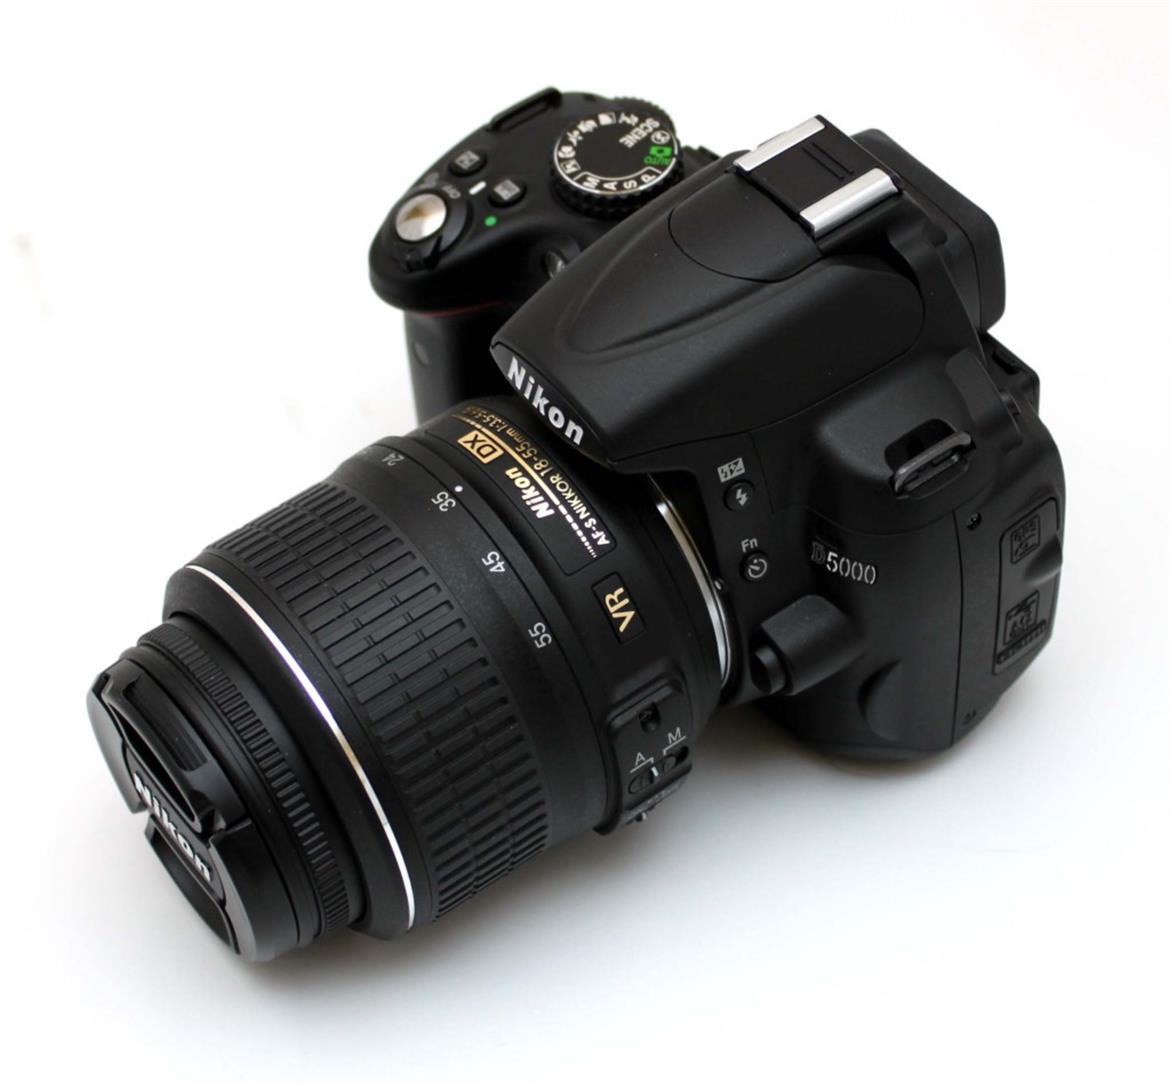 Nikon D5000 DSLR Review